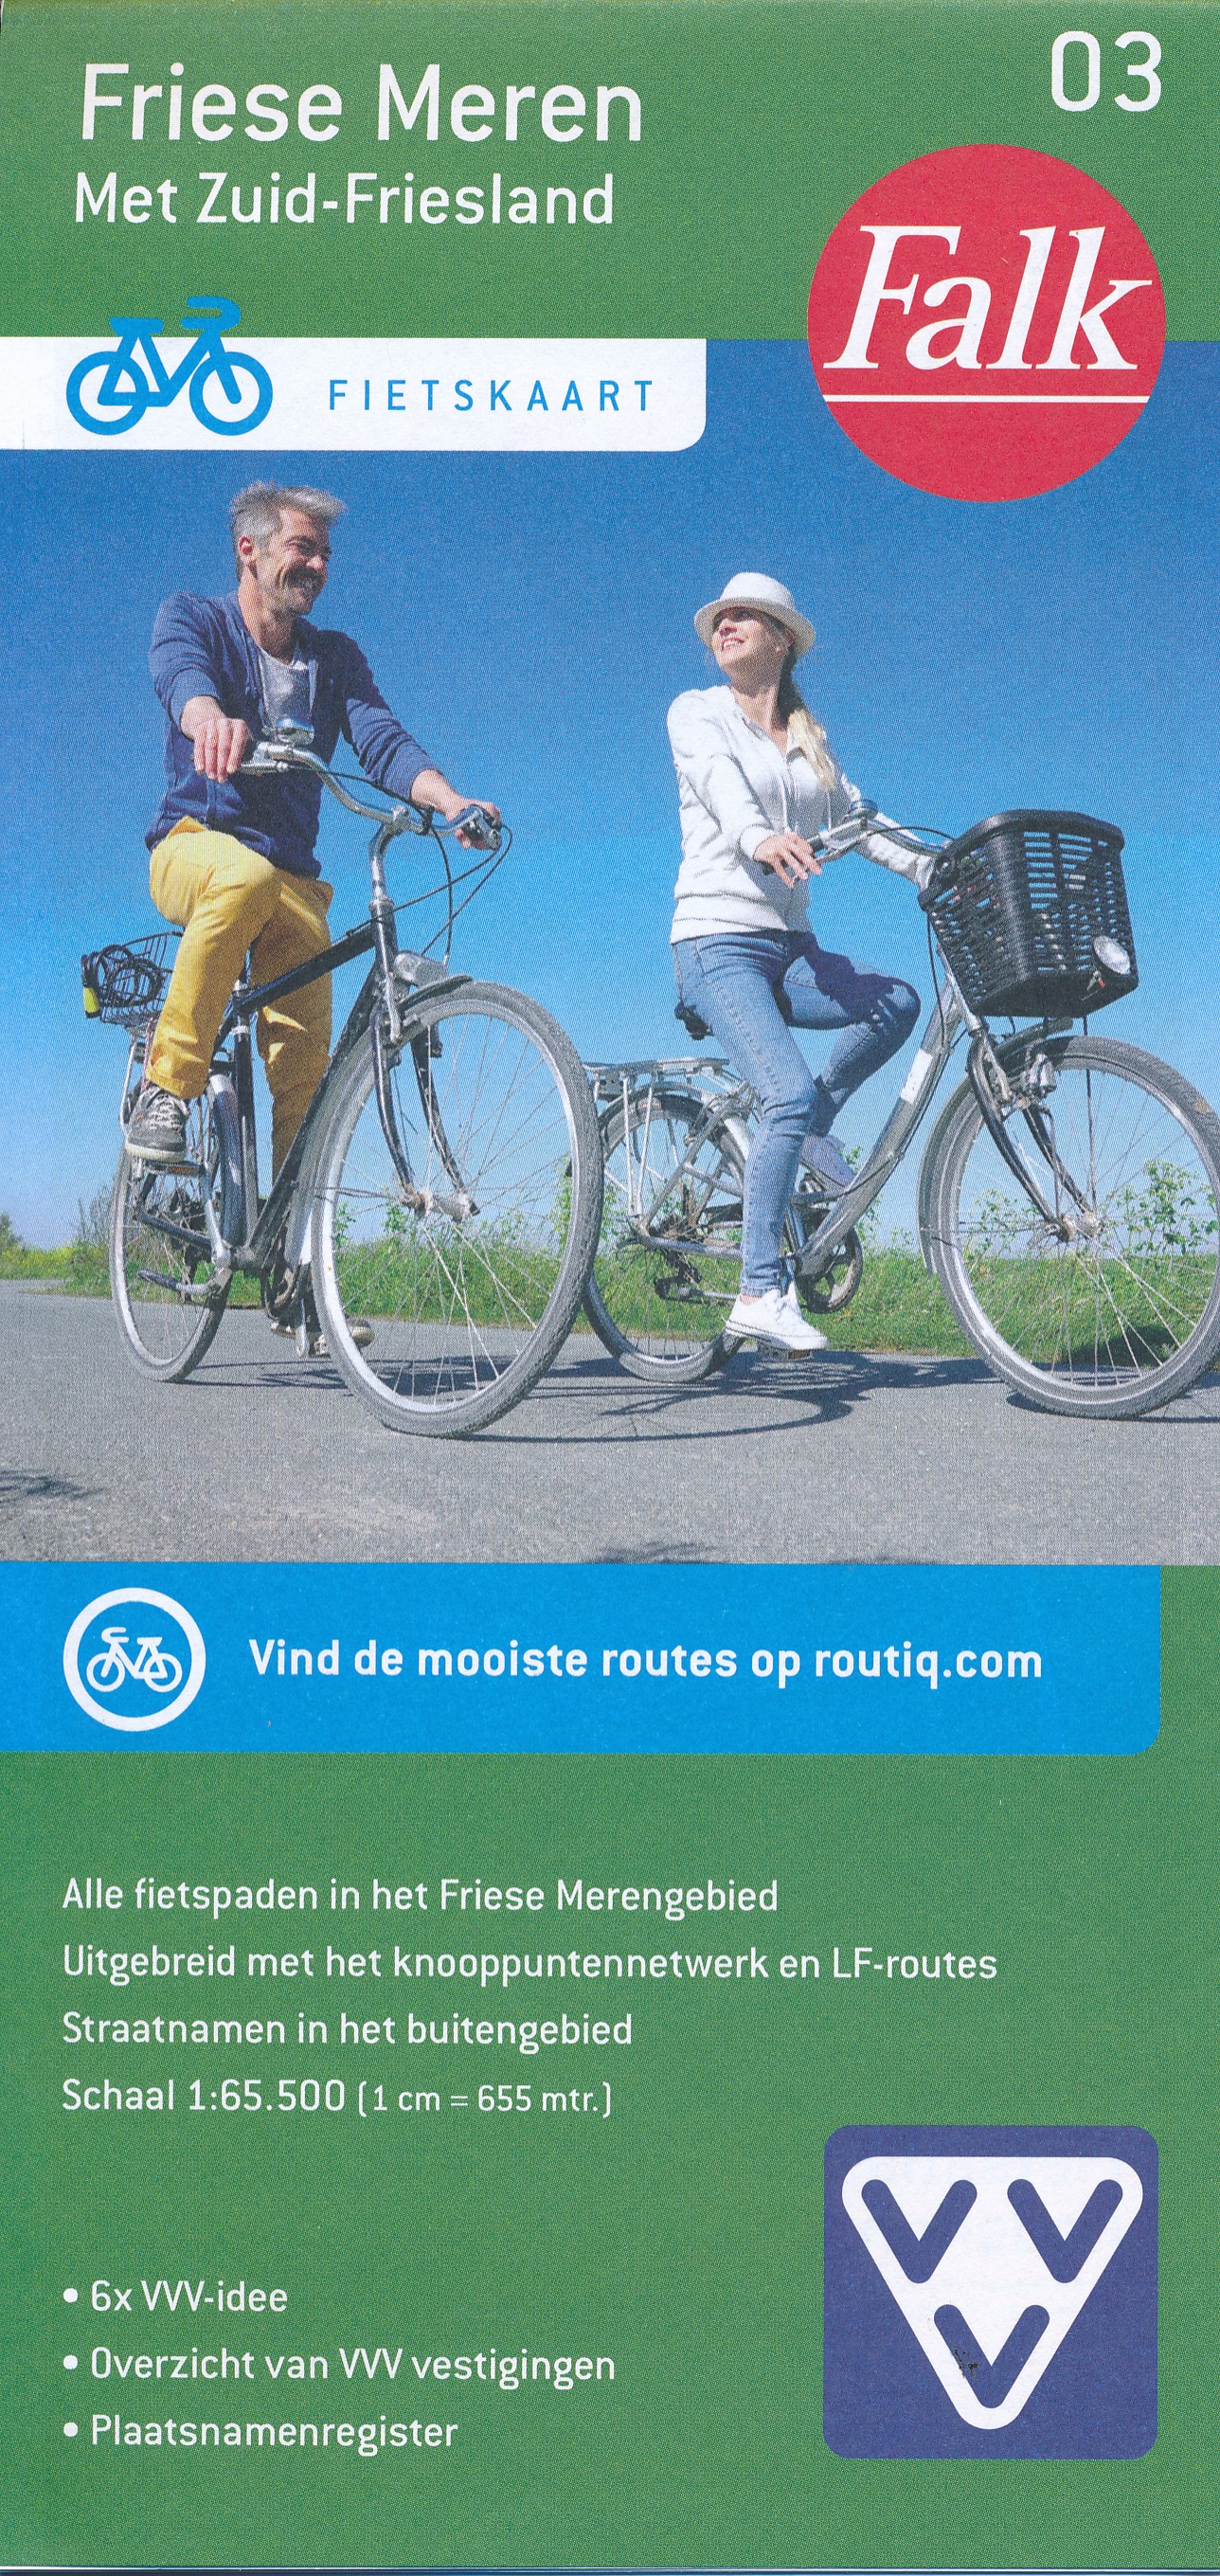 Online bestellen: Fietskaart 03 Friese Meren met Zuid-Friesland | Falk